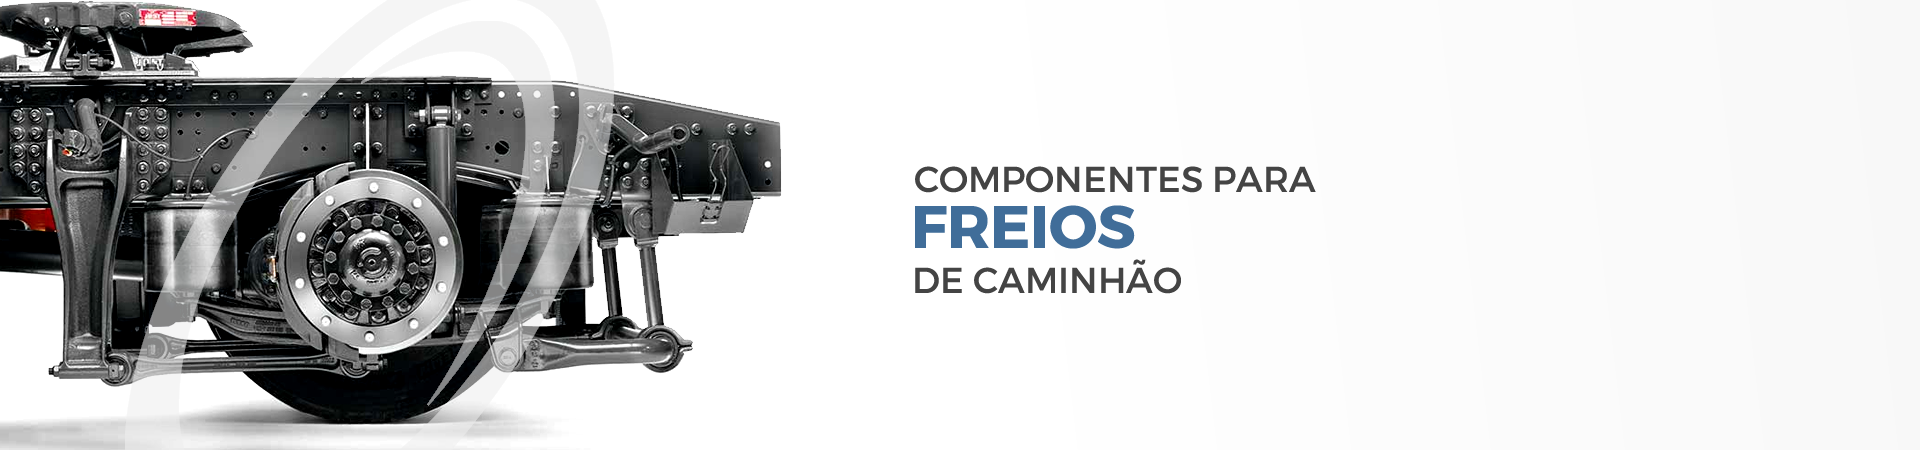 Central Minas Freios - Componentes para freios de caminhão